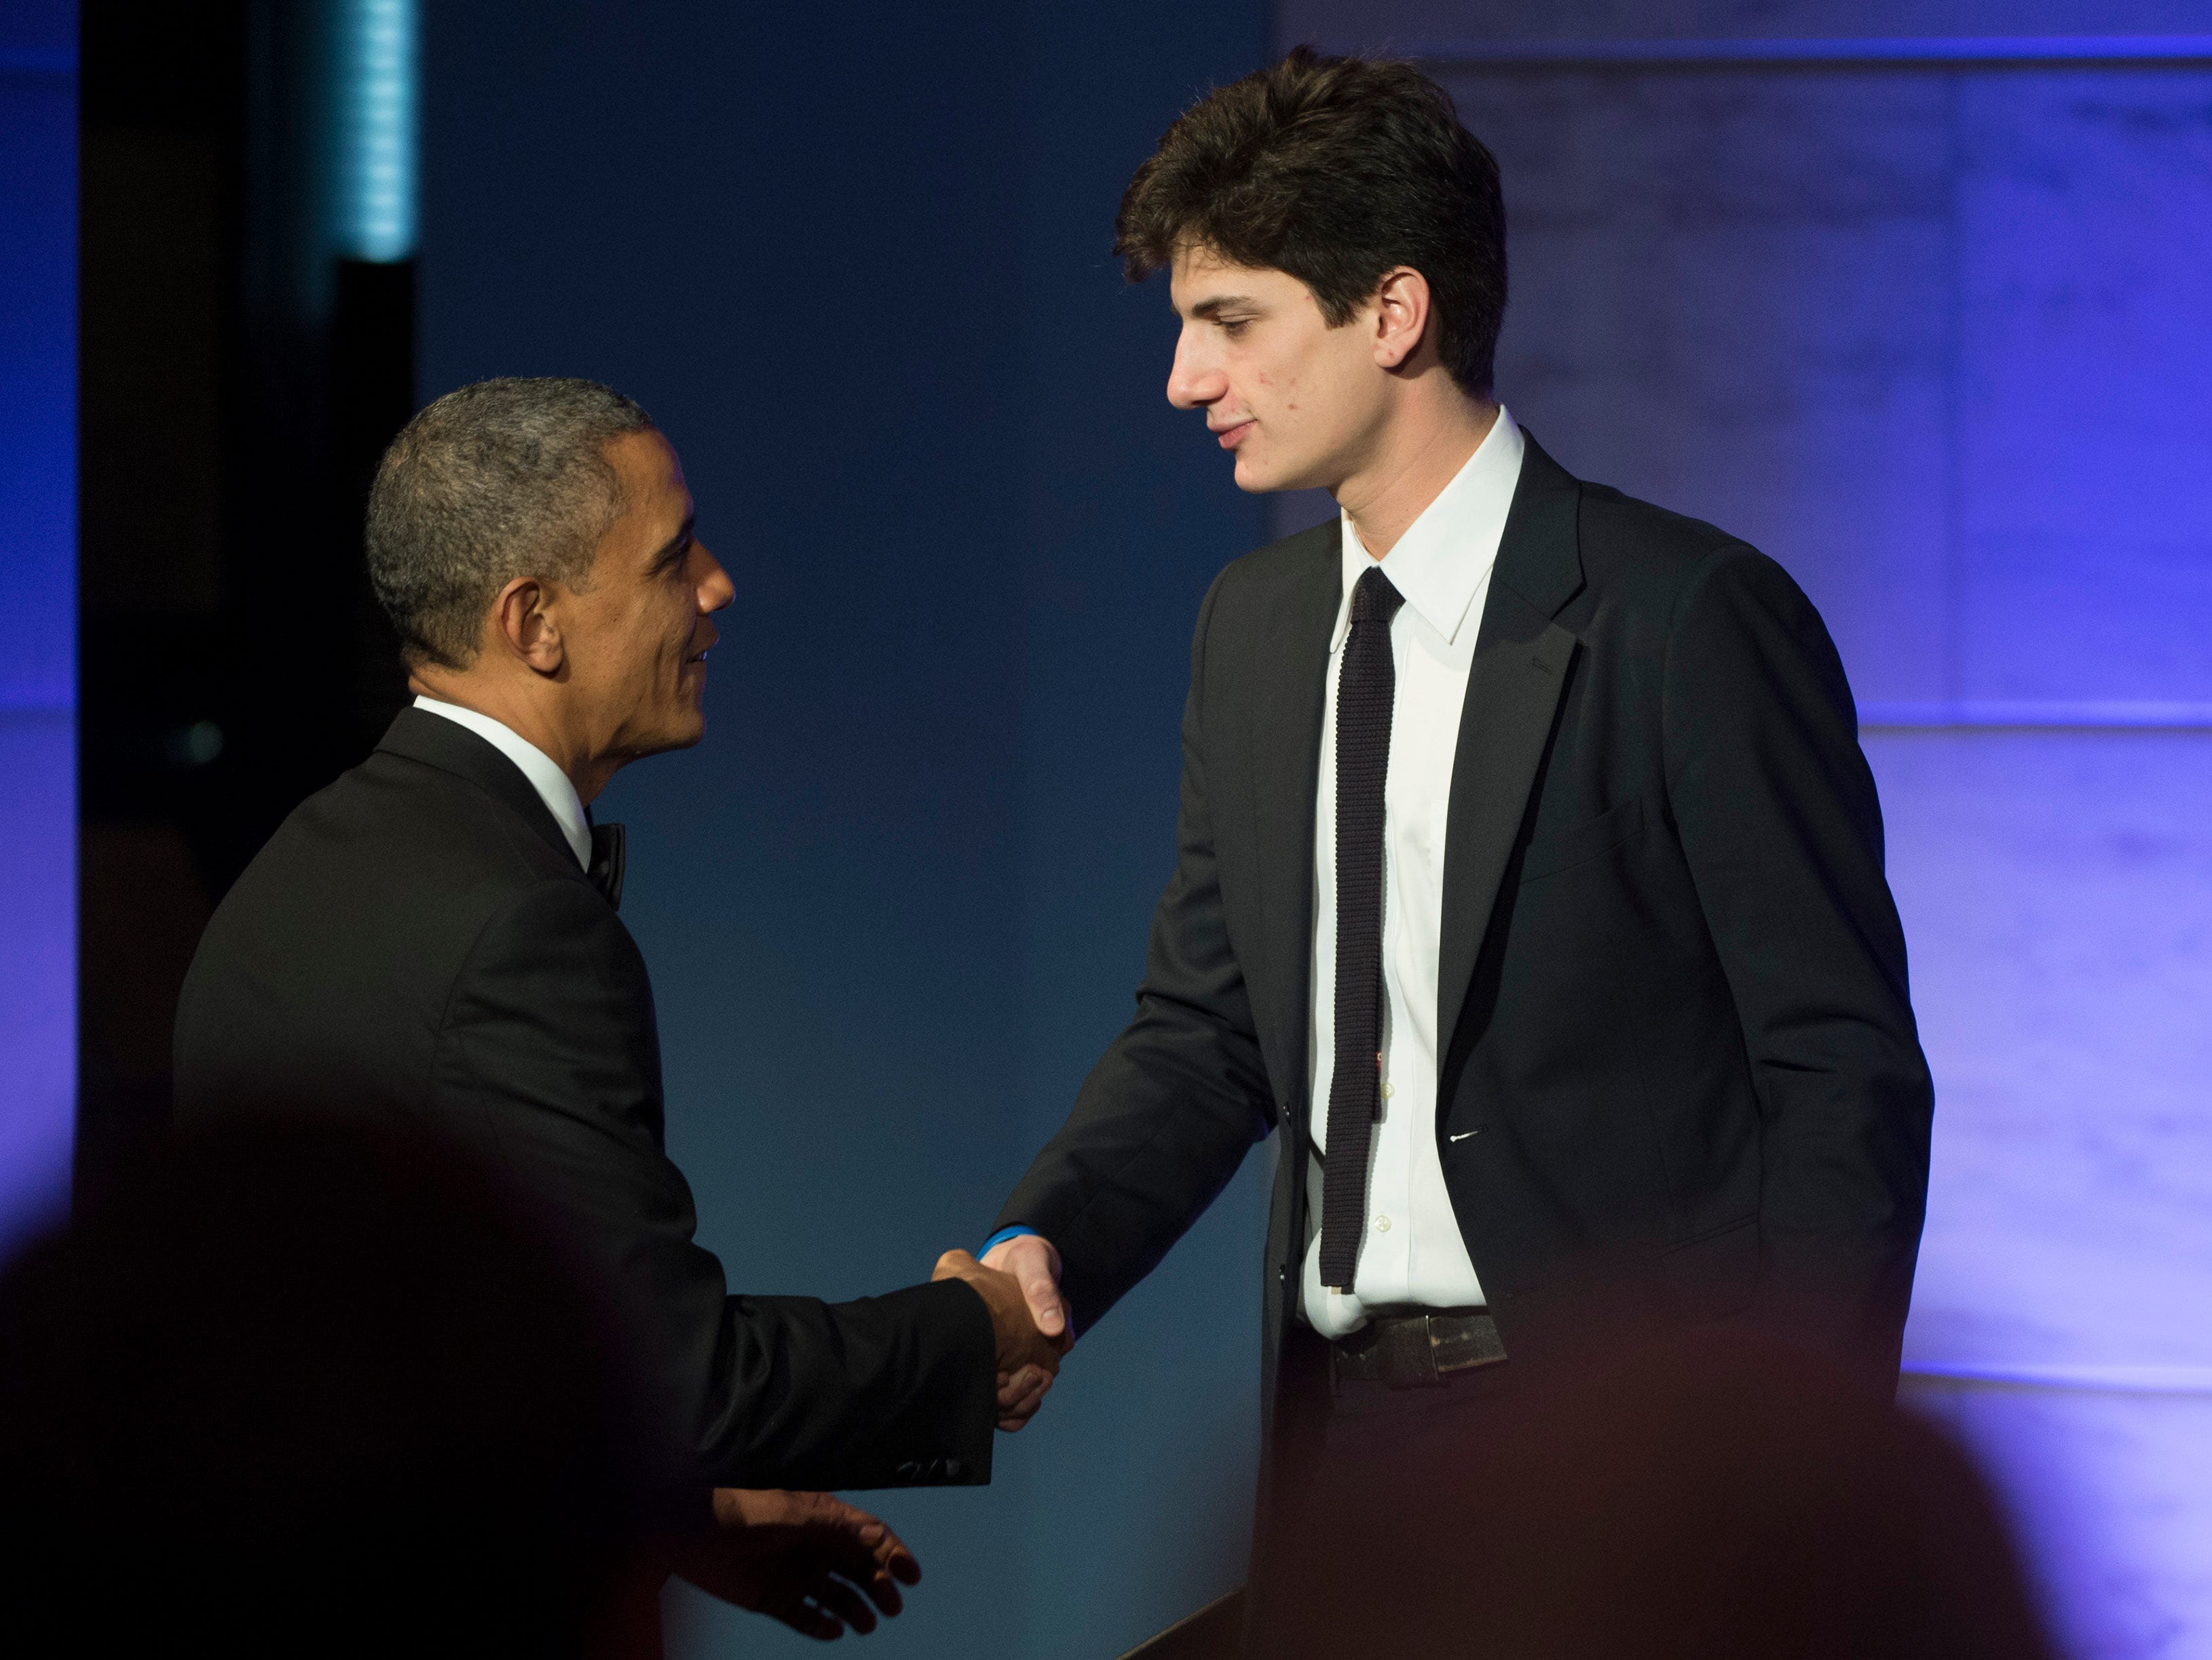 Barack Obama schüttelt Jack Schlossberg die Hand, nachdem er Obama am 20. November 2013 bei einem Abendessen zu Ehren der Medal of Freedom-Preisträger im Smithsonian National Museum of American History vorgestellt hat